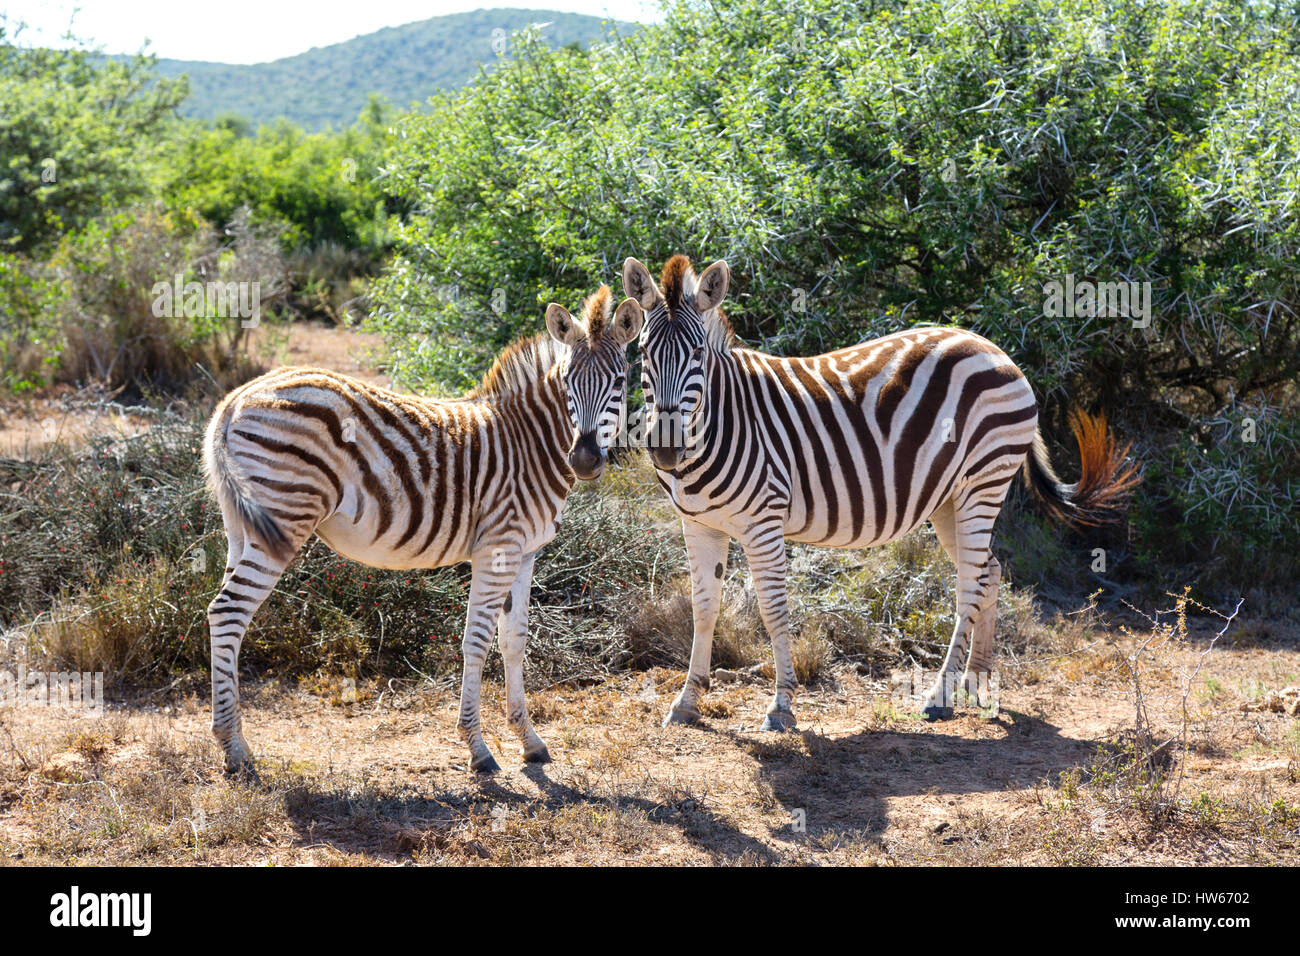 Les zèbres - Paire de zèbres, zèbre Des Plaines, Equus quagga - concept de l'amour des animaux, les animaux dans l'amour, Afrique du Sud Banque D'Images